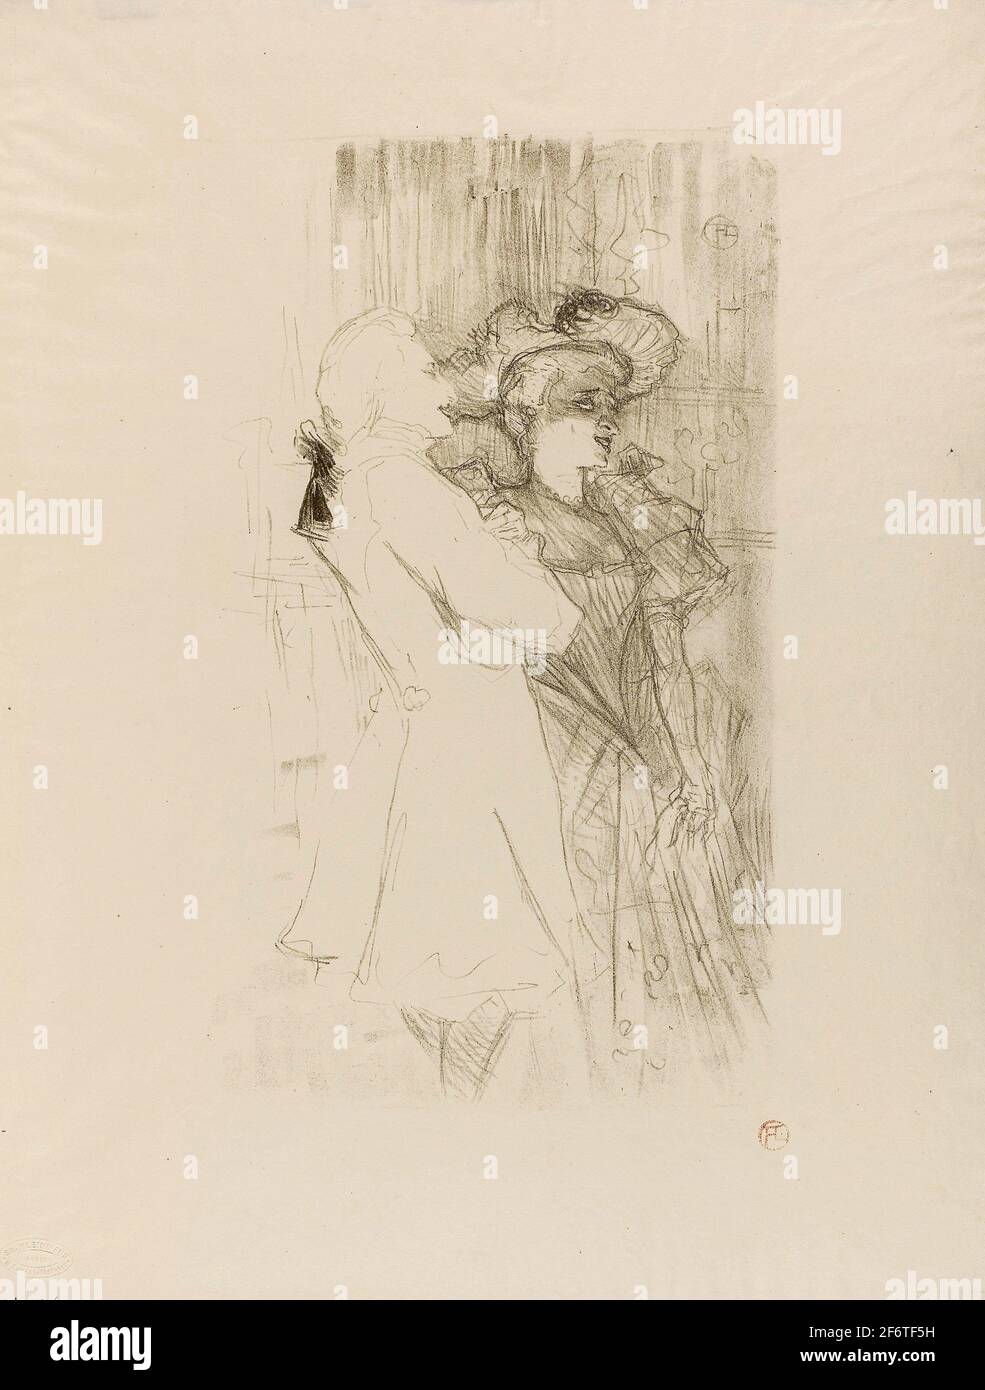 Author: Henri de Toulouse-Lautrec. Lender and Auguez in La Chanson de Fortunio - 1895 - Henri de Toulouse-Lautrec French, 1864-1901. Color lithograph Stock Photo